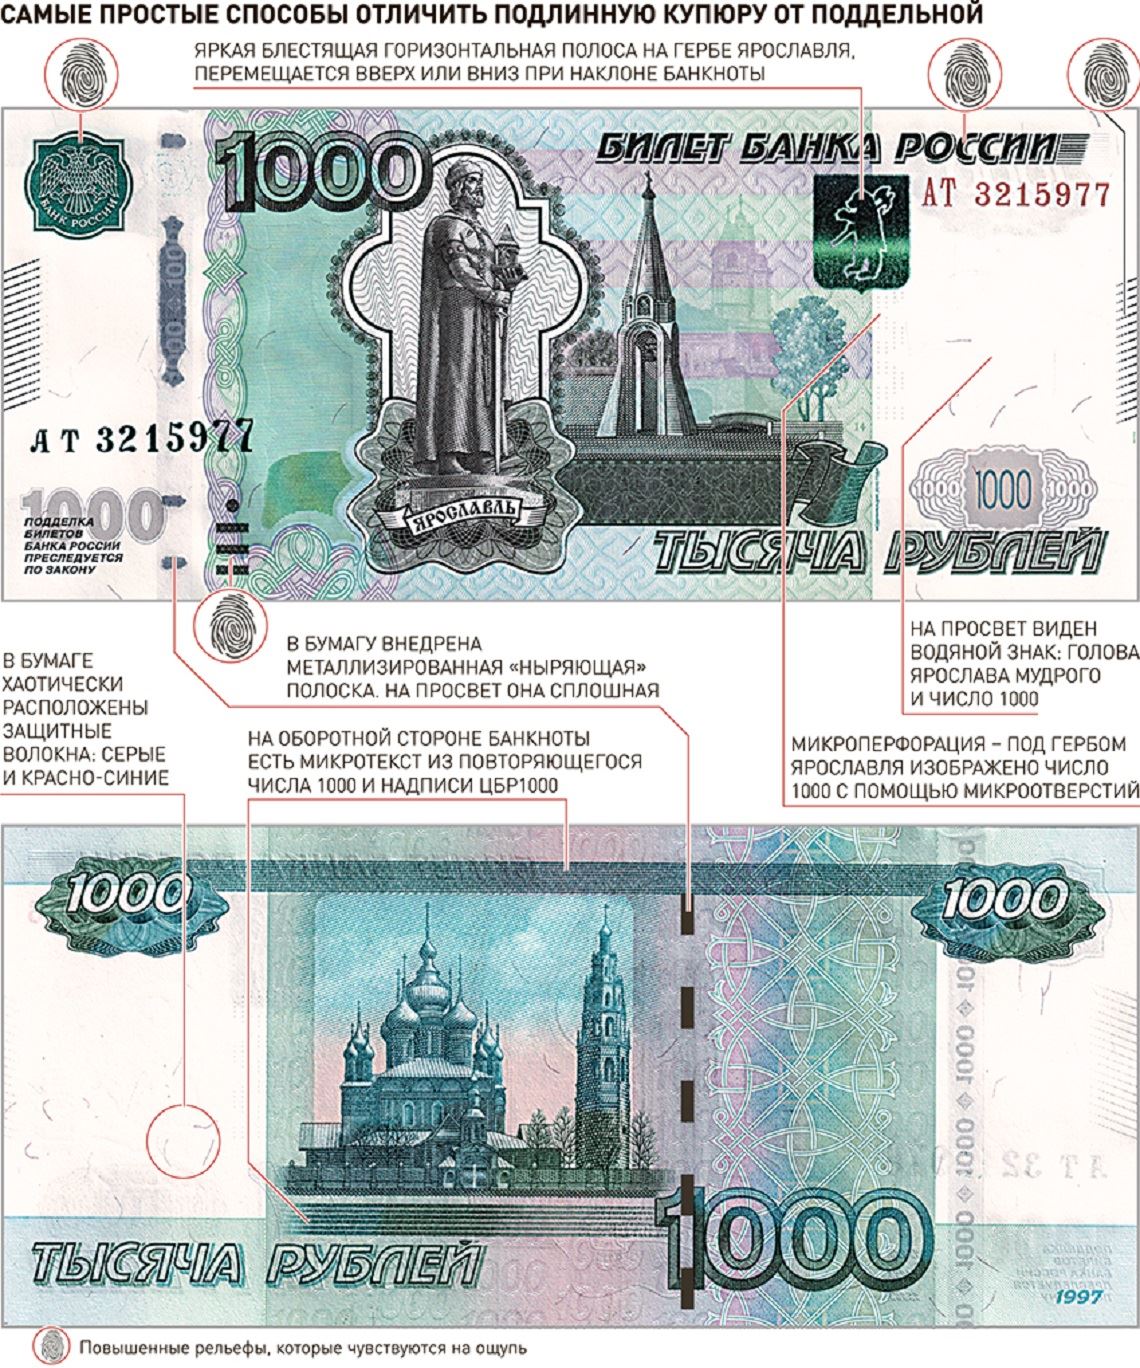 Найти денежную купюру. Купюра 1000 рублей как отличить подделку. Как определить фальшивые деньги 1000.